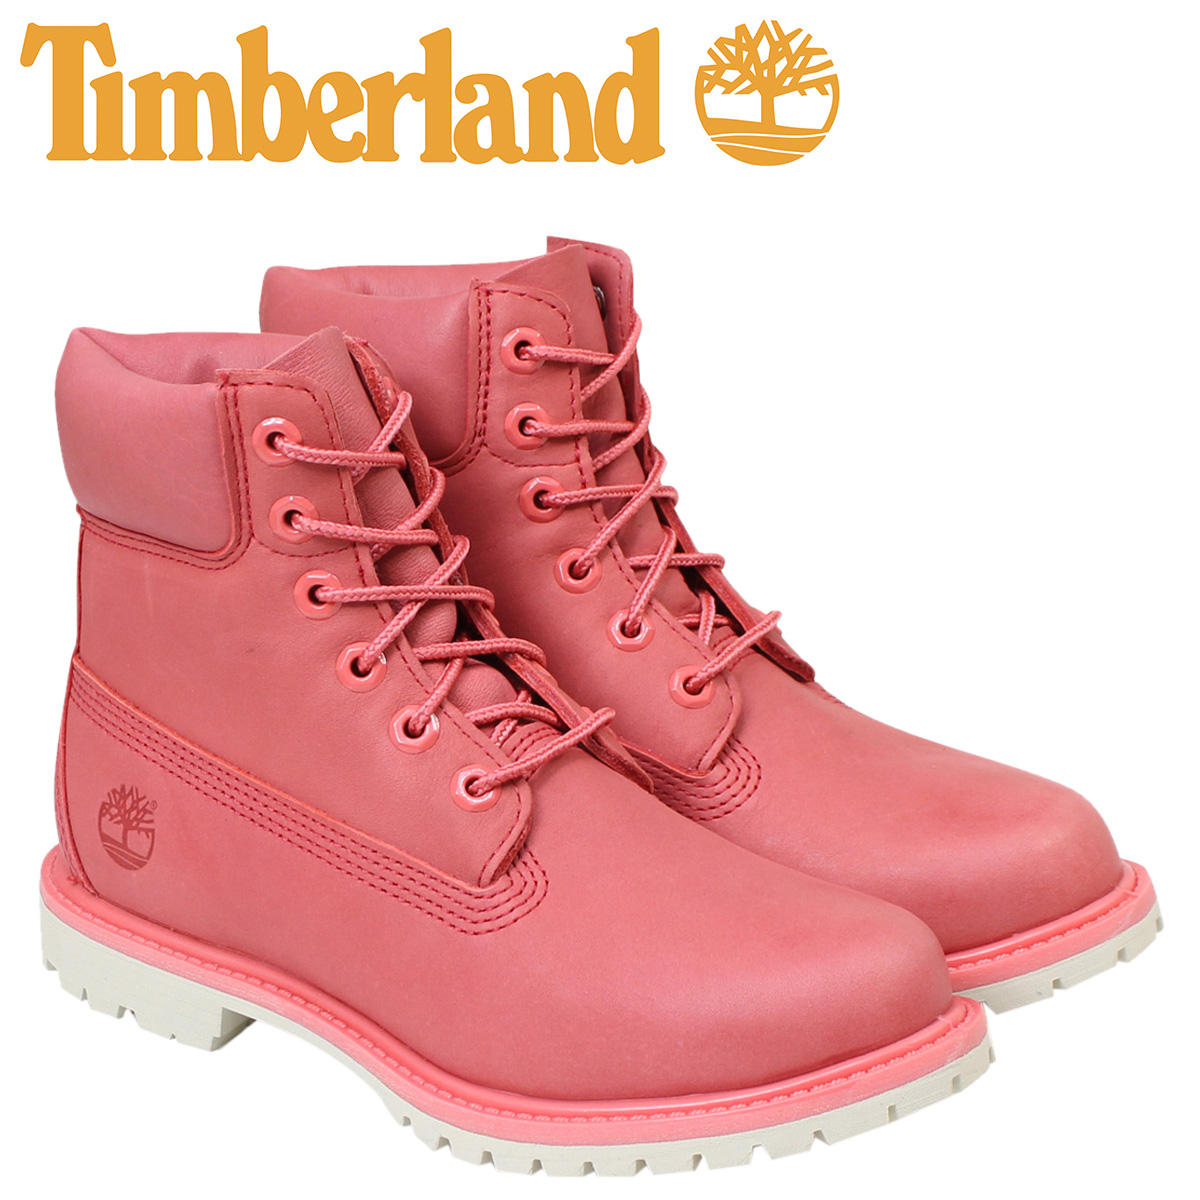 楽天市場 ティンバーランド レディース メンズ 6インチ Timberland ブーツ 6inchi Womens 6 Inch Boots A1aqk Wワイズ 防水 ピンク シュガーオンラインショップ